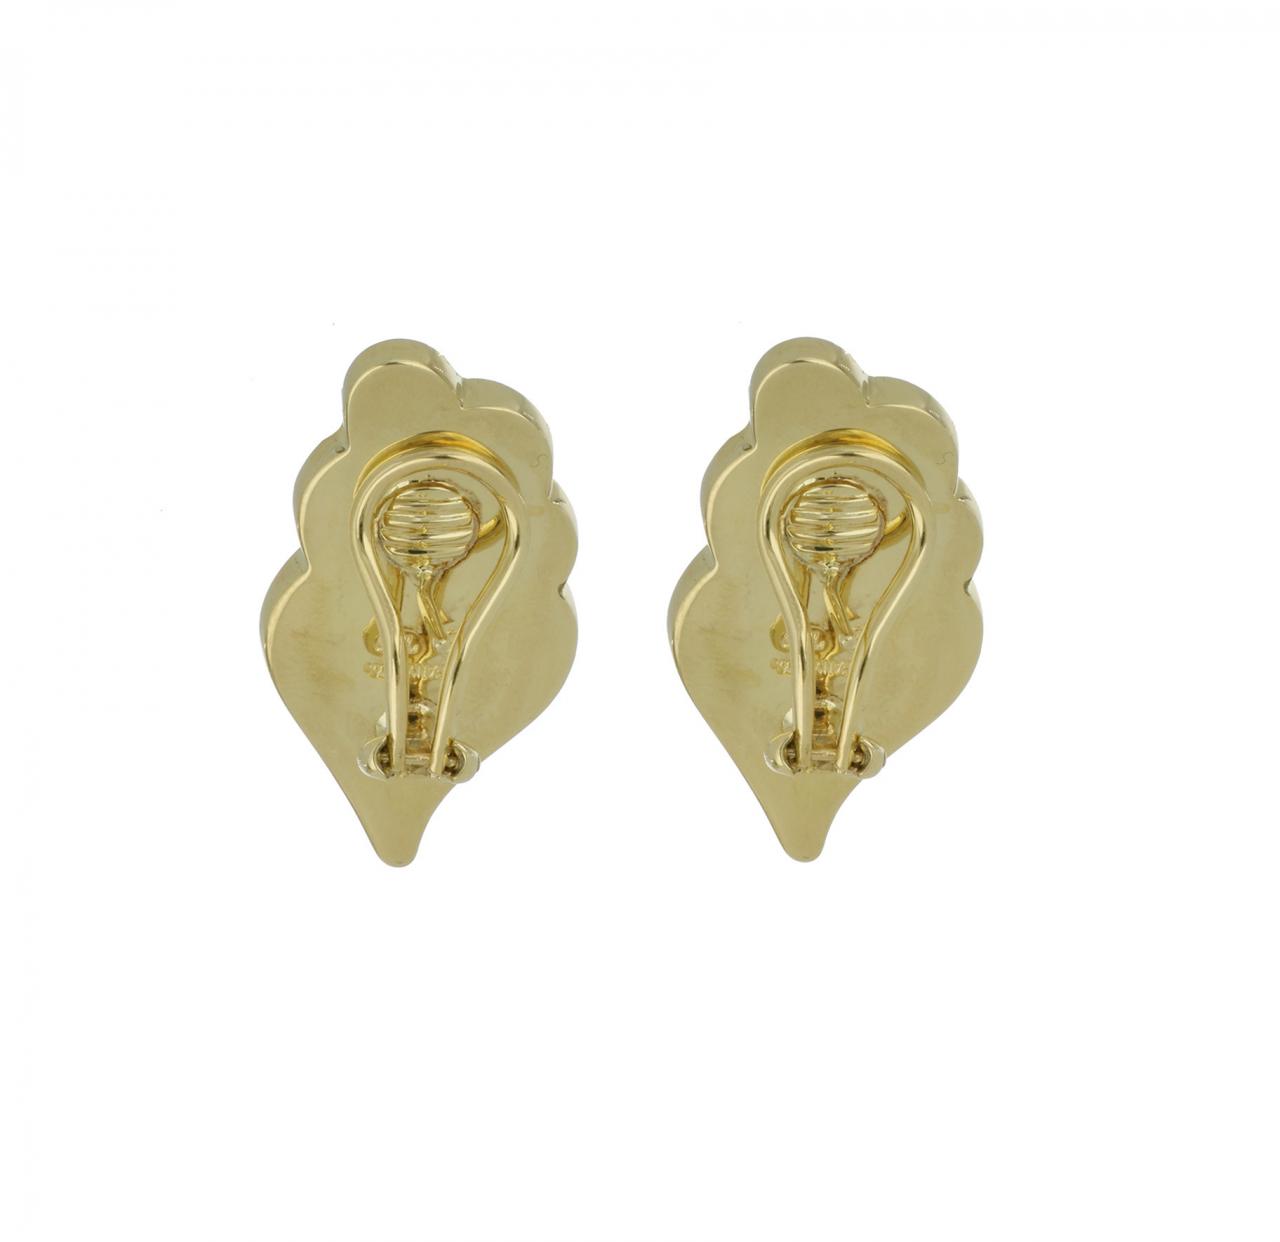 fancy gold earrings design - Uprising Bihar